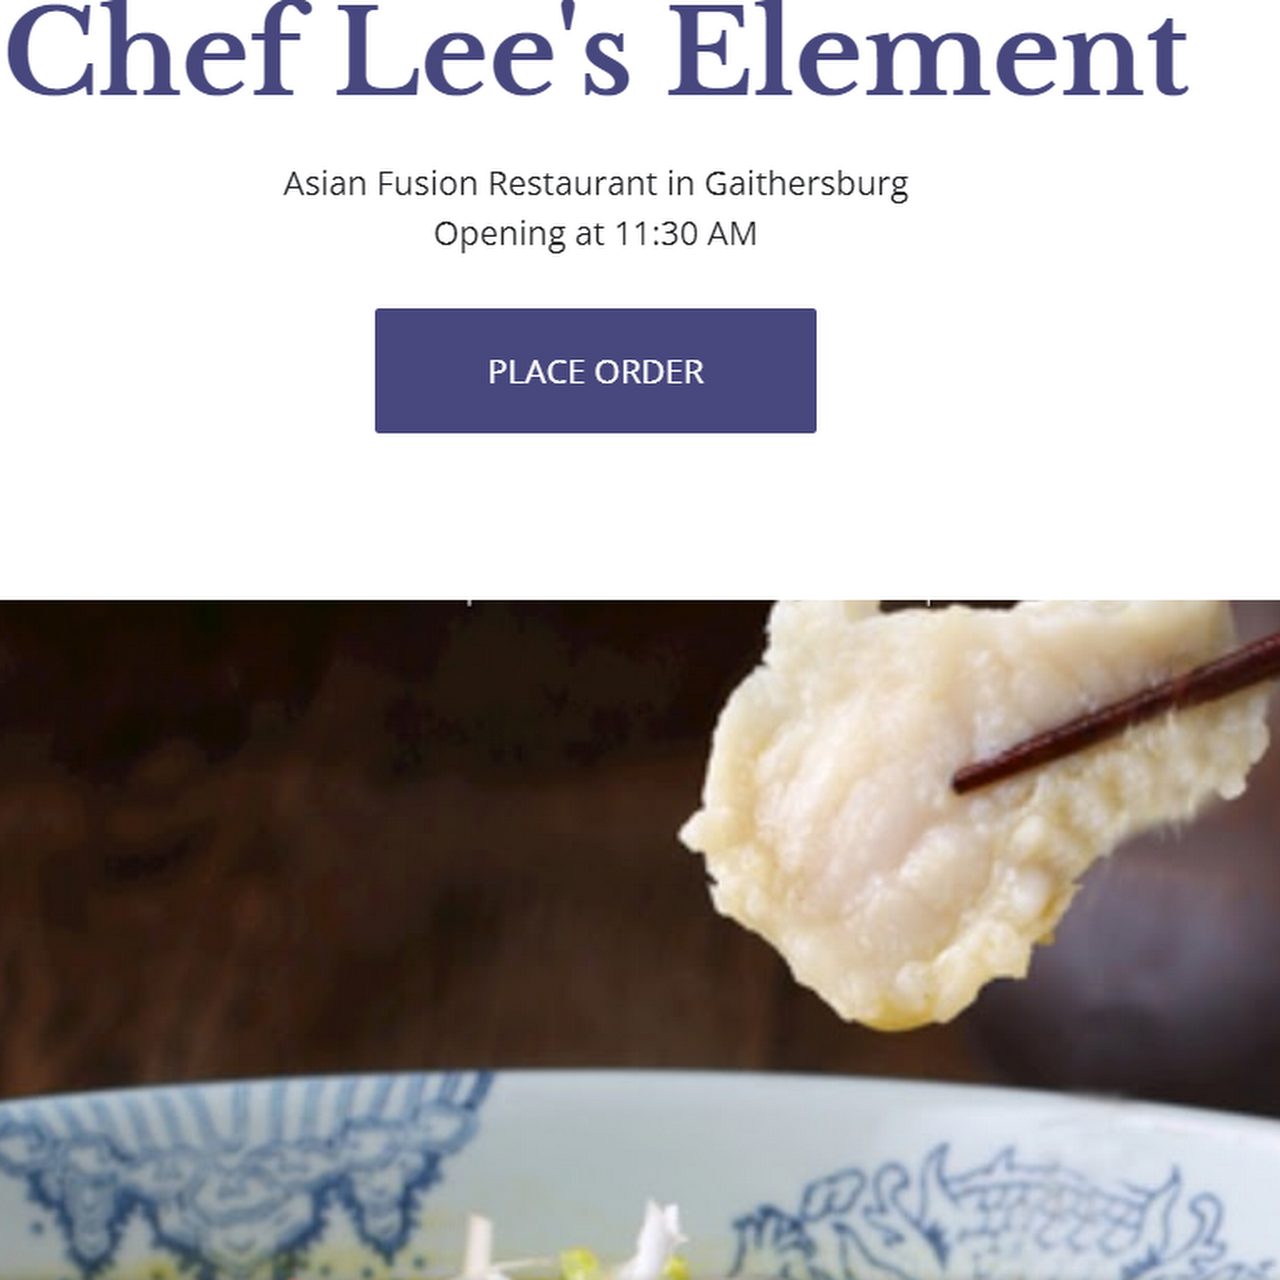 Chef Lee's Element - Asian Fusion Restaurant in Gaithersburg